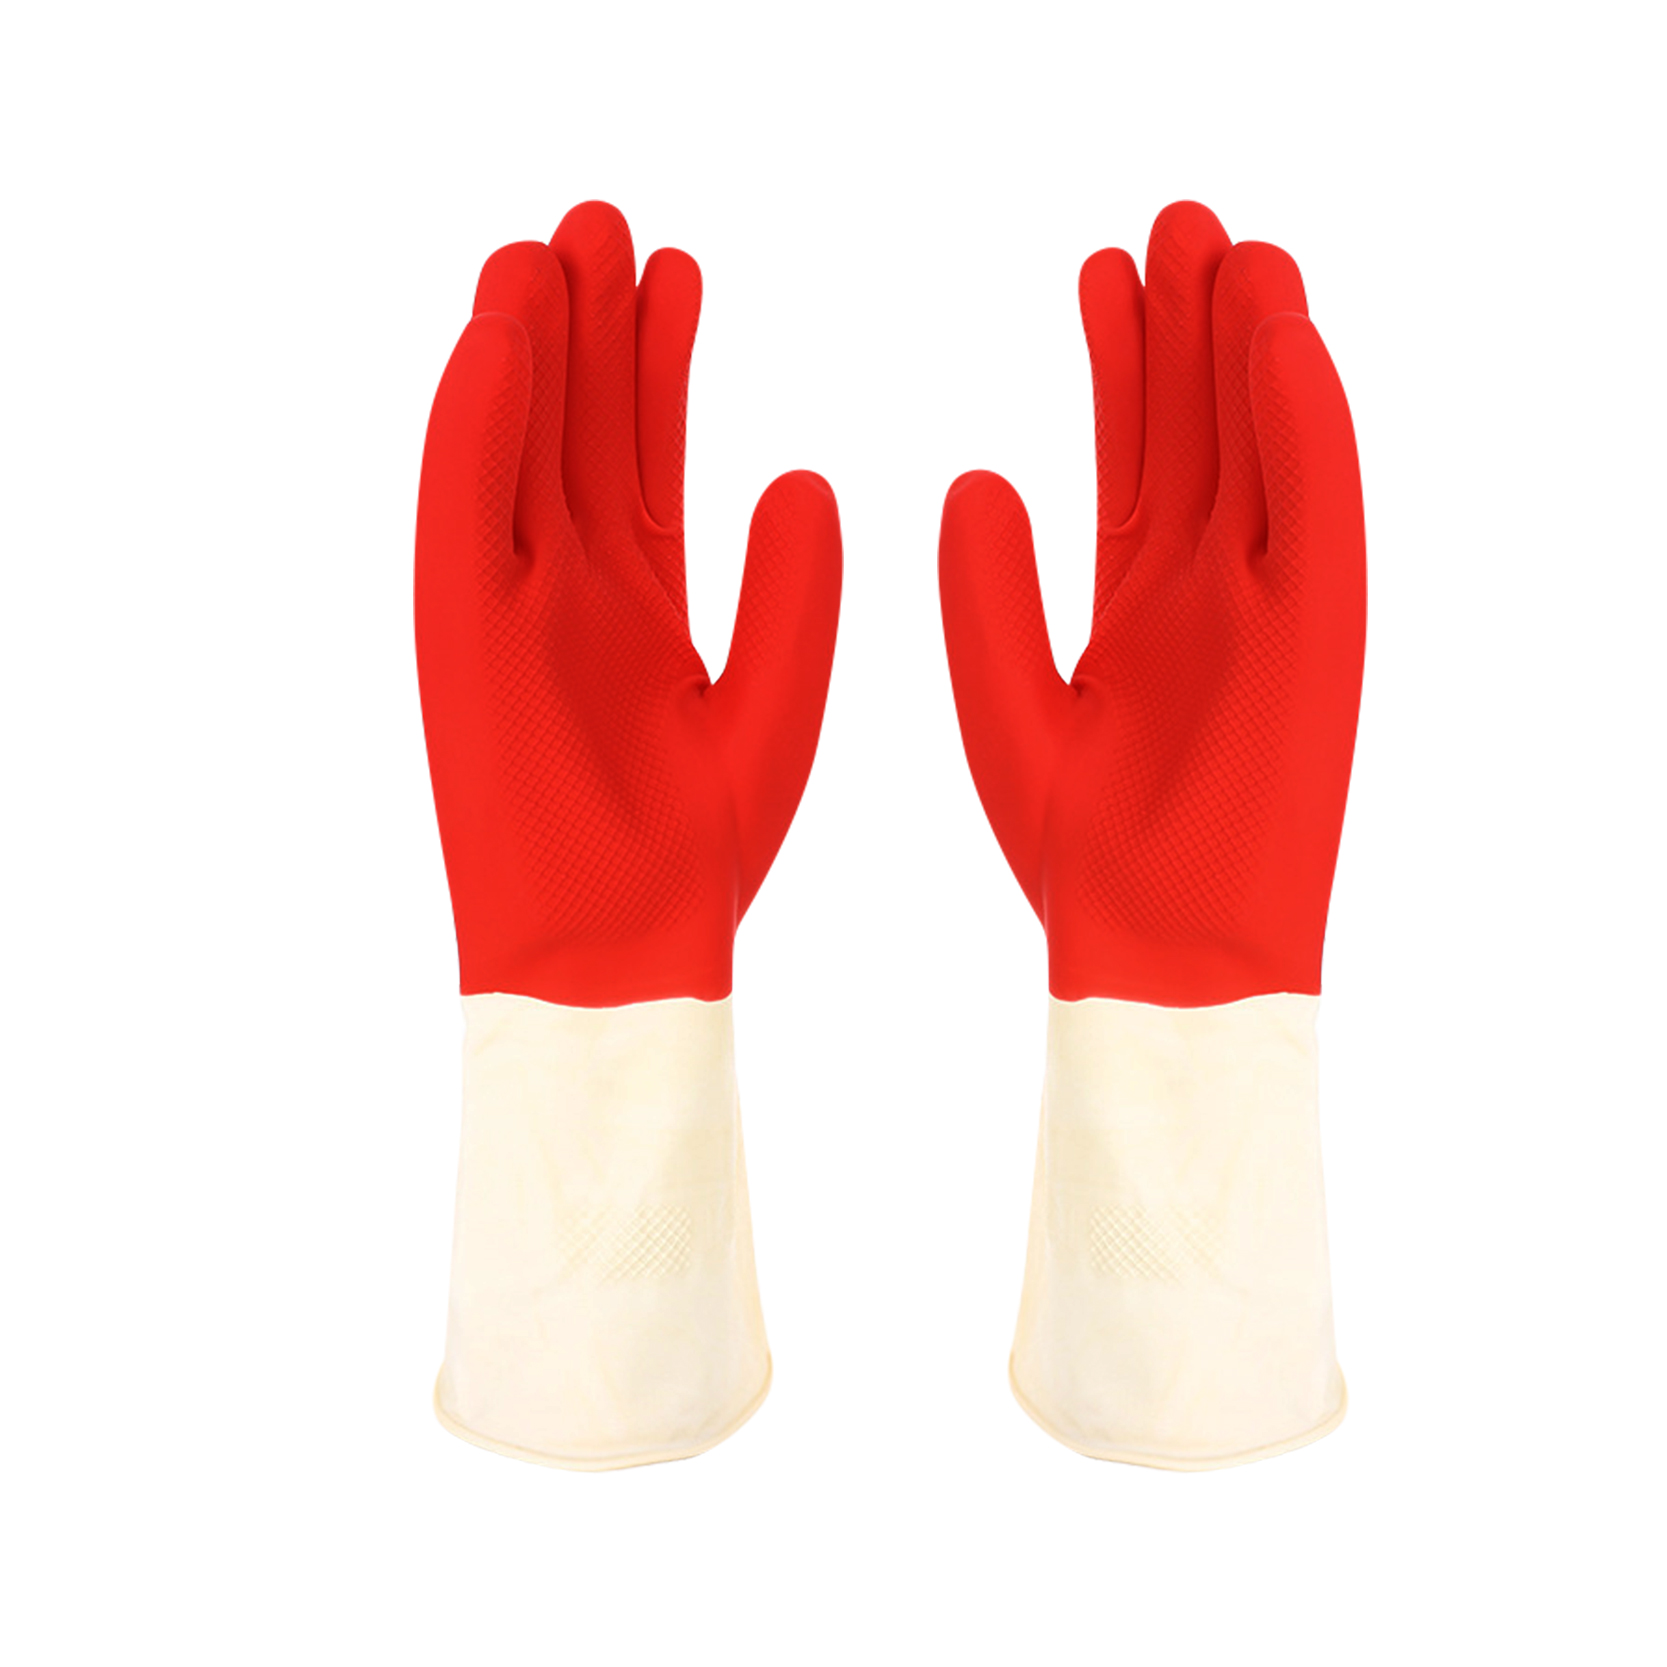 Sarung tangan lateks industri dua warna merah dan putih berfungsi